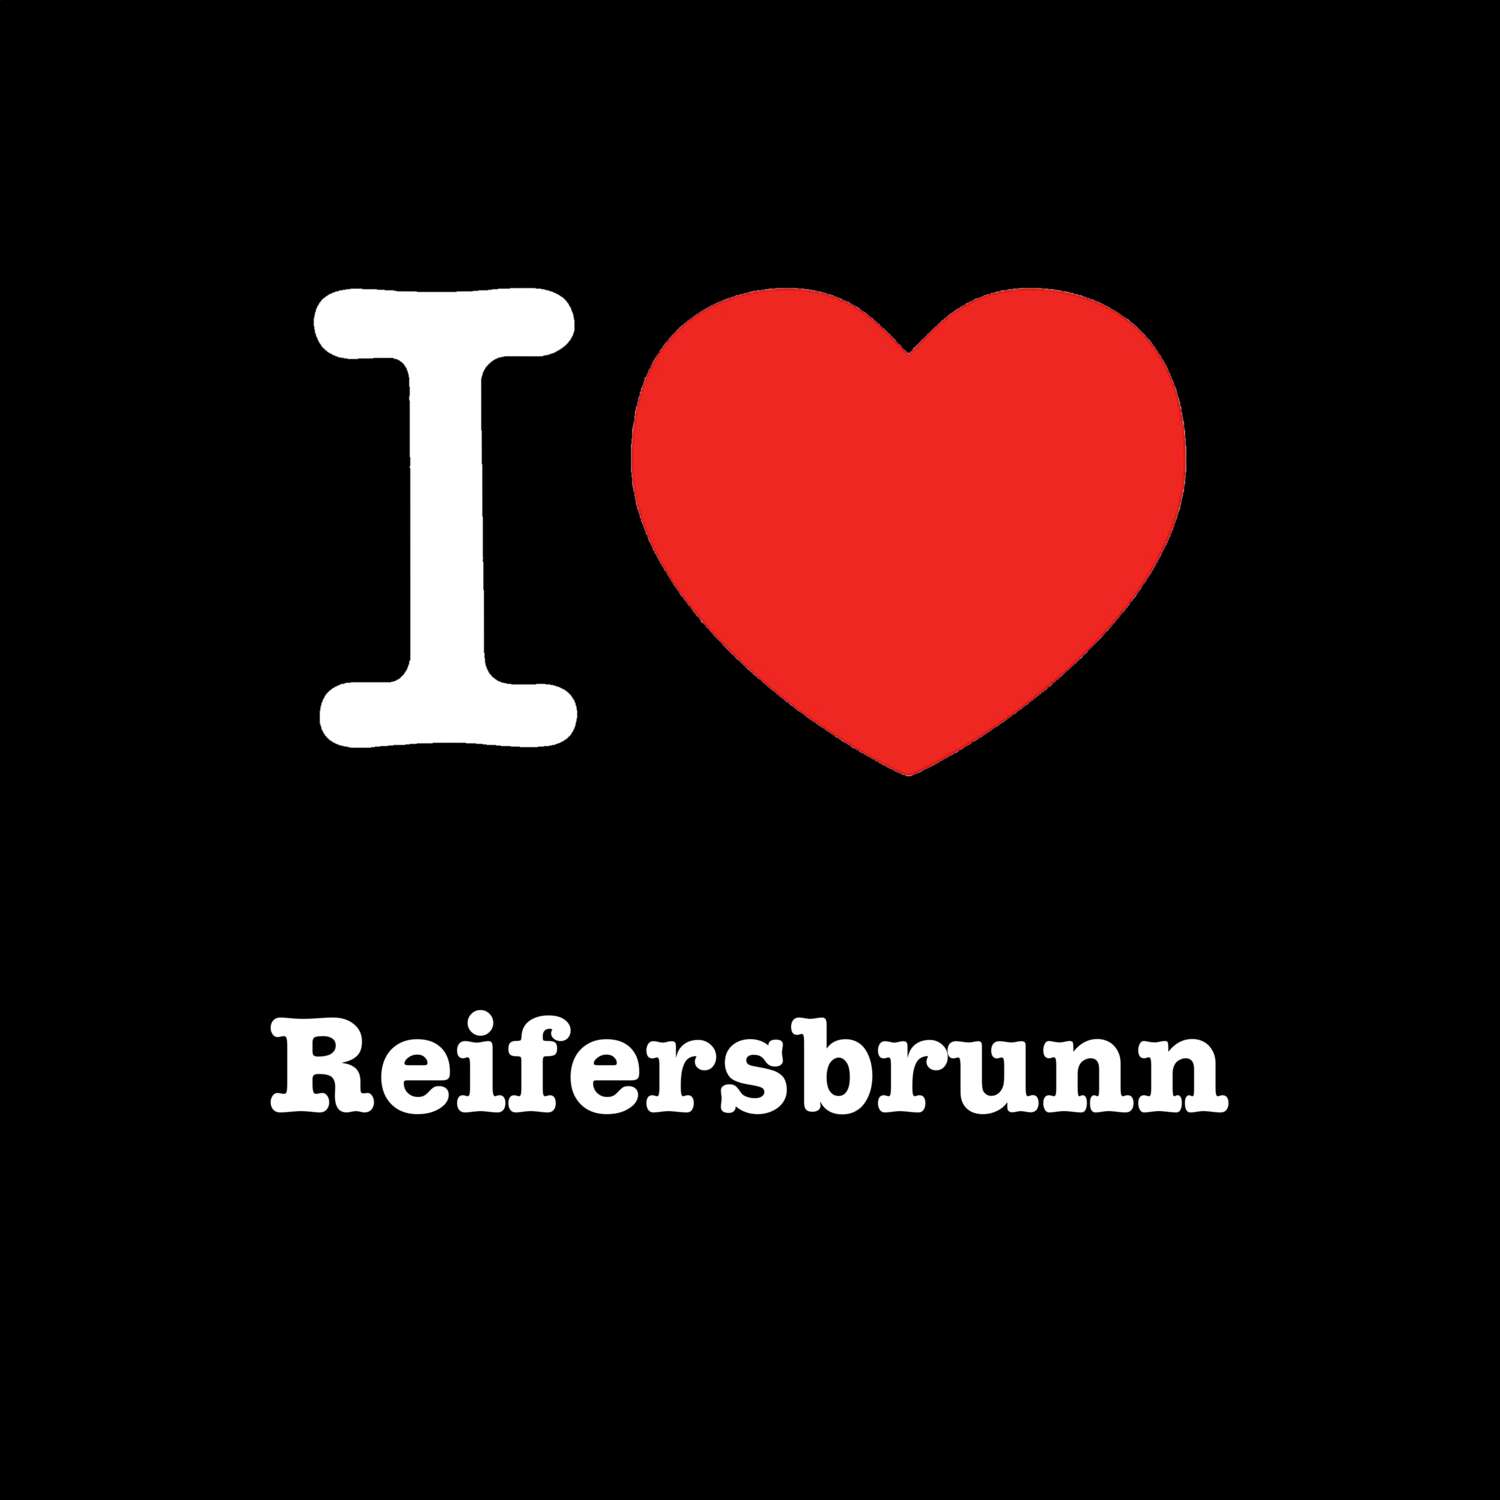 Reifersbrunn T-Shirt »I love«